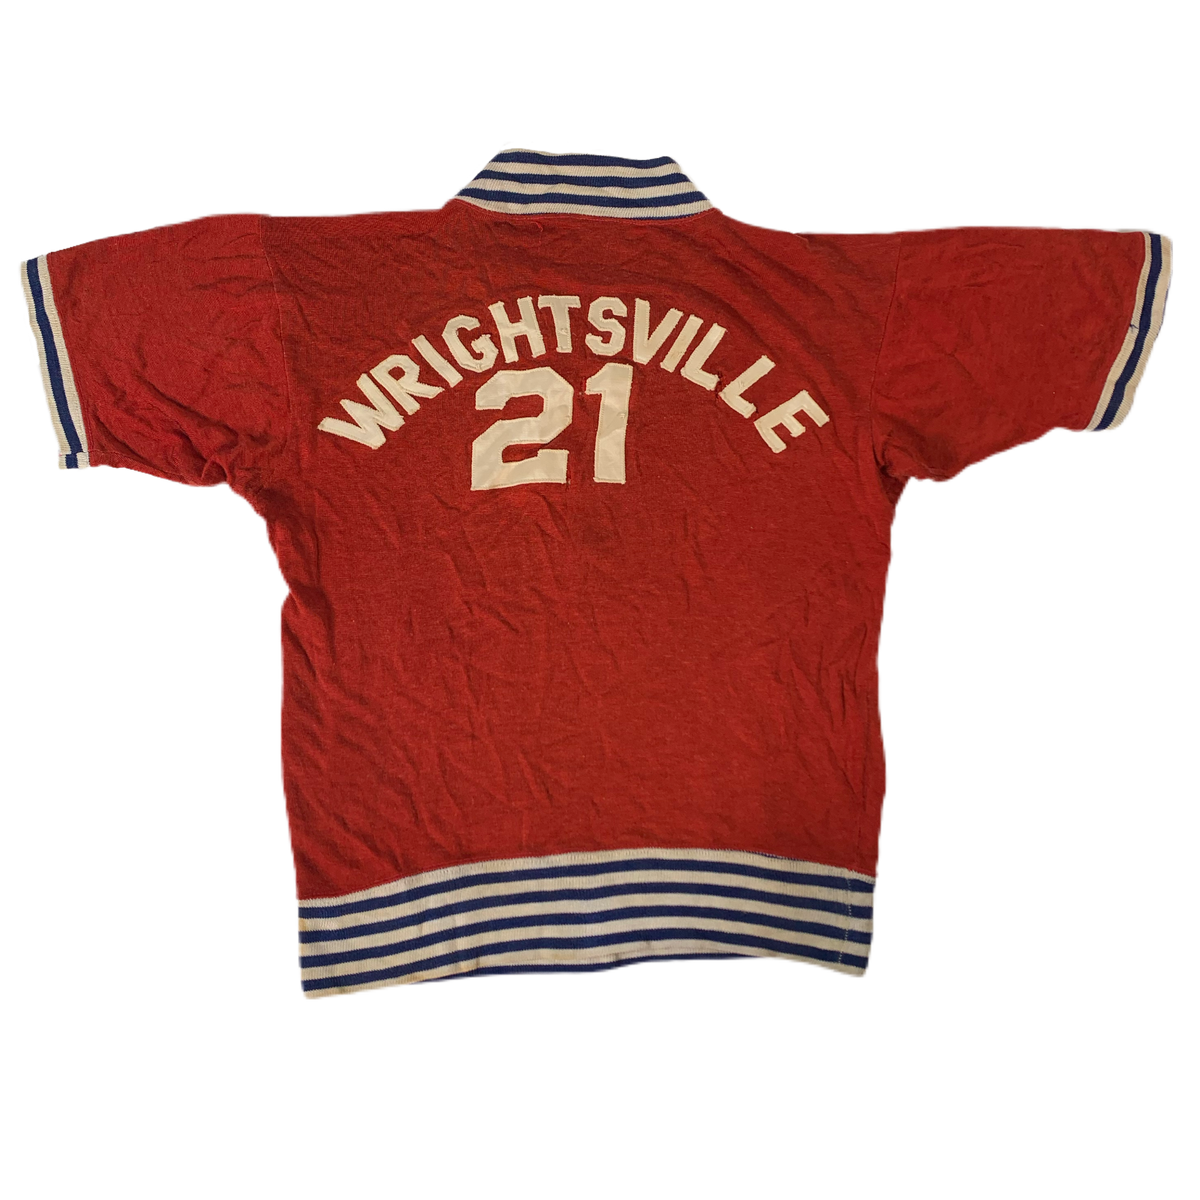 Vintage Wrightsville “Quarter-Zip” Practice Jersey - jointcustodydc